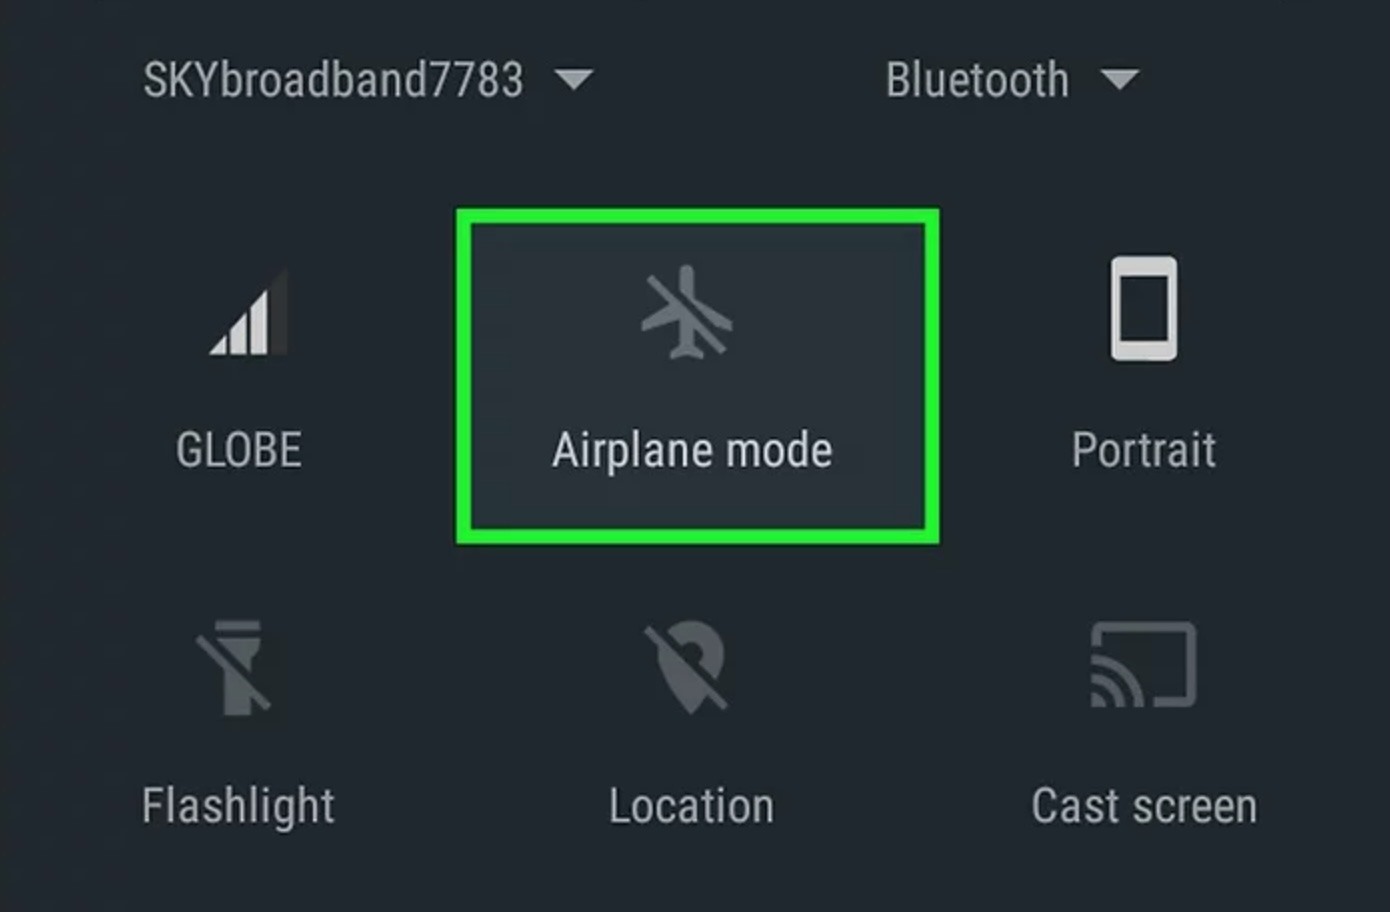 Chế độ máy bay có thể được bật dễ dàng từ thanh tiện ích của điện thoại Android. Ảnh: Wiki